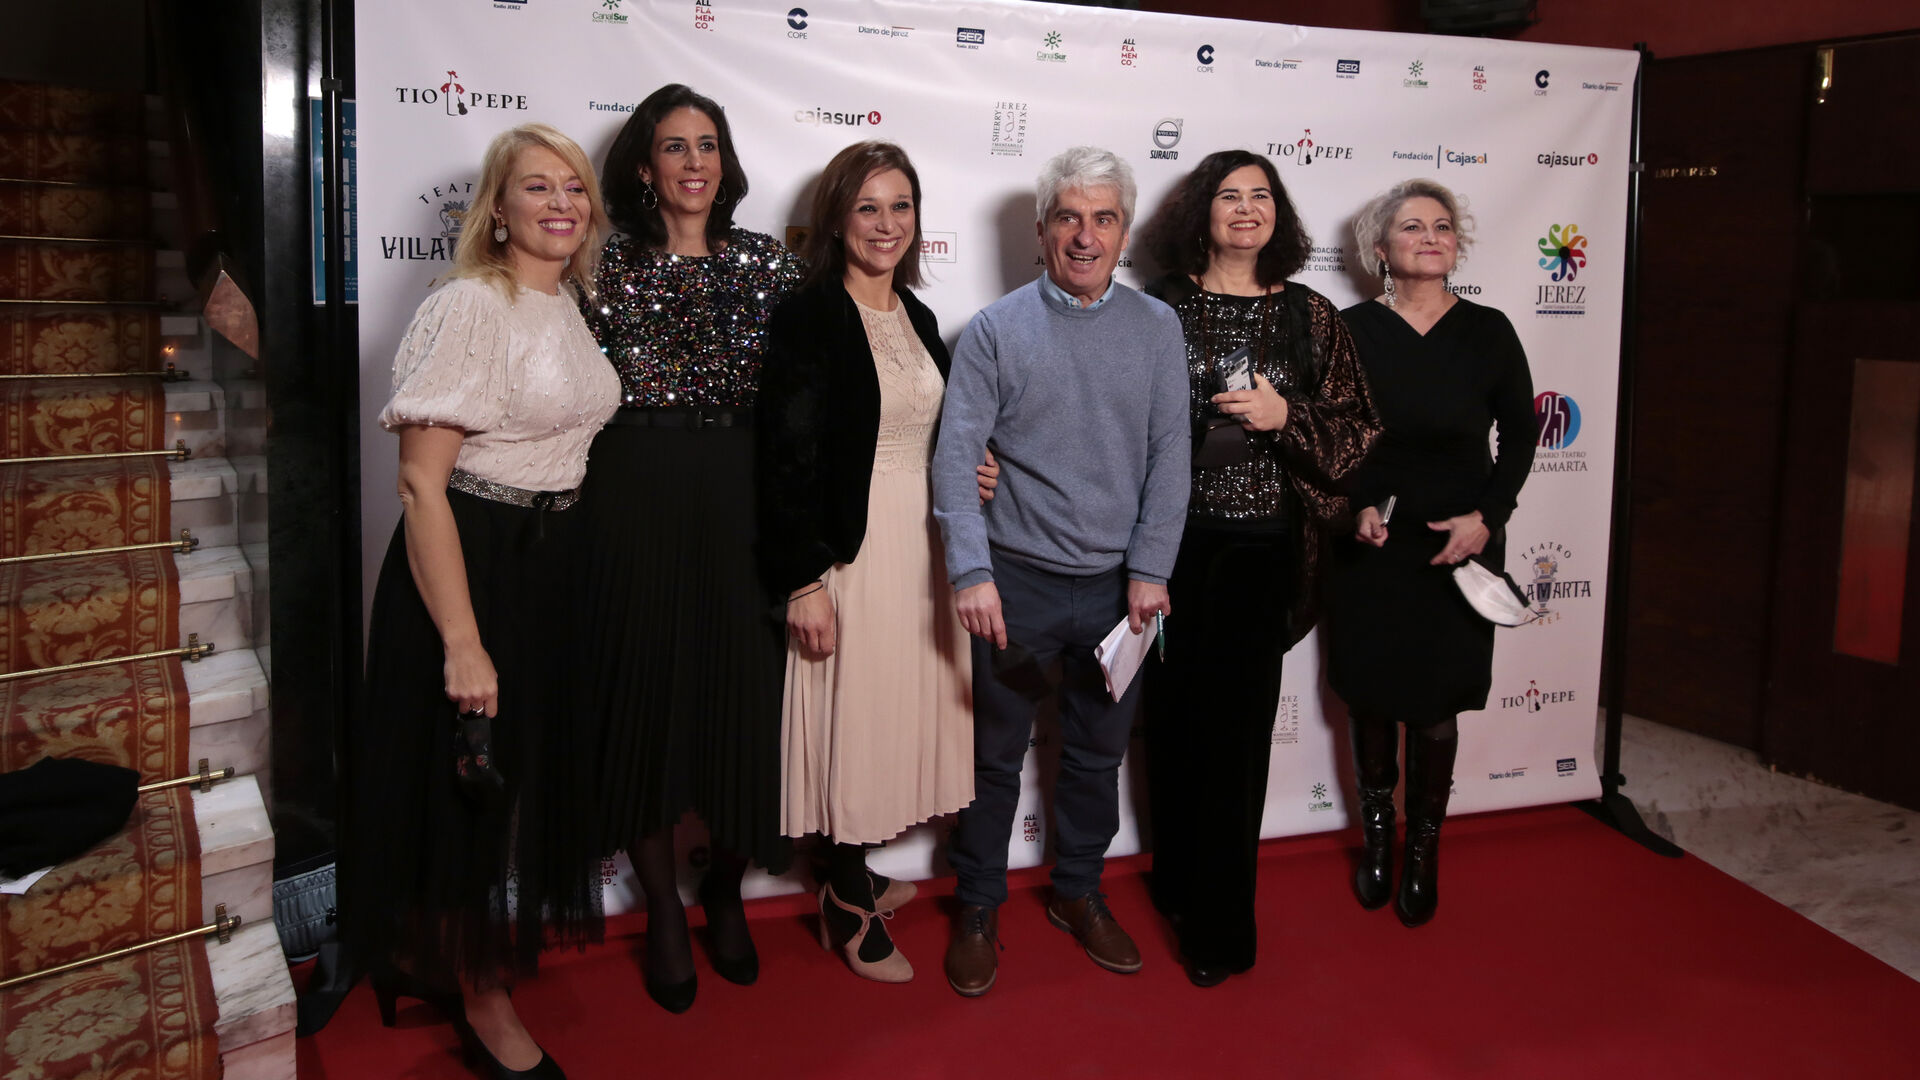 El Teatro Villamarta celebra su 25 aniversario